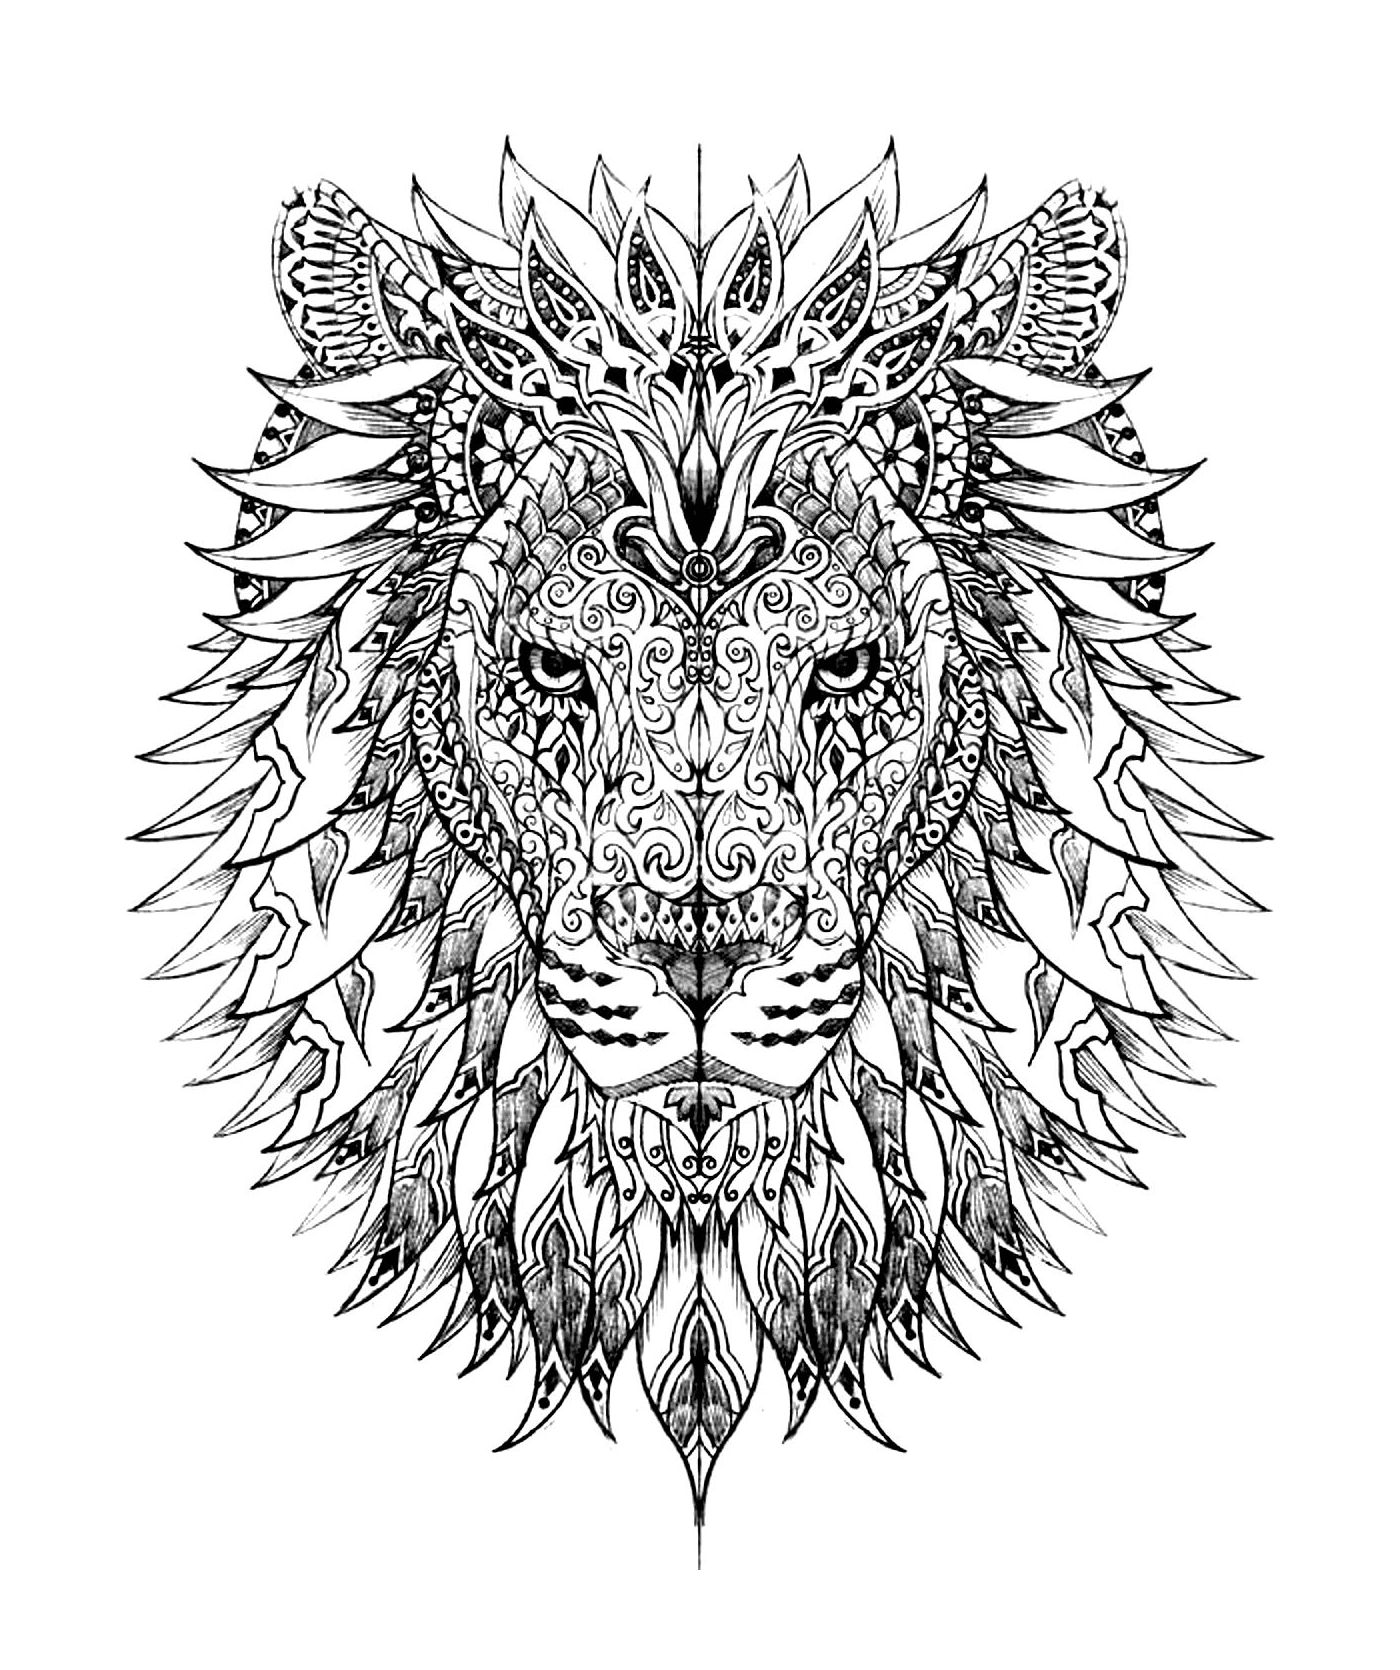  A cabeça de um leão complexo 